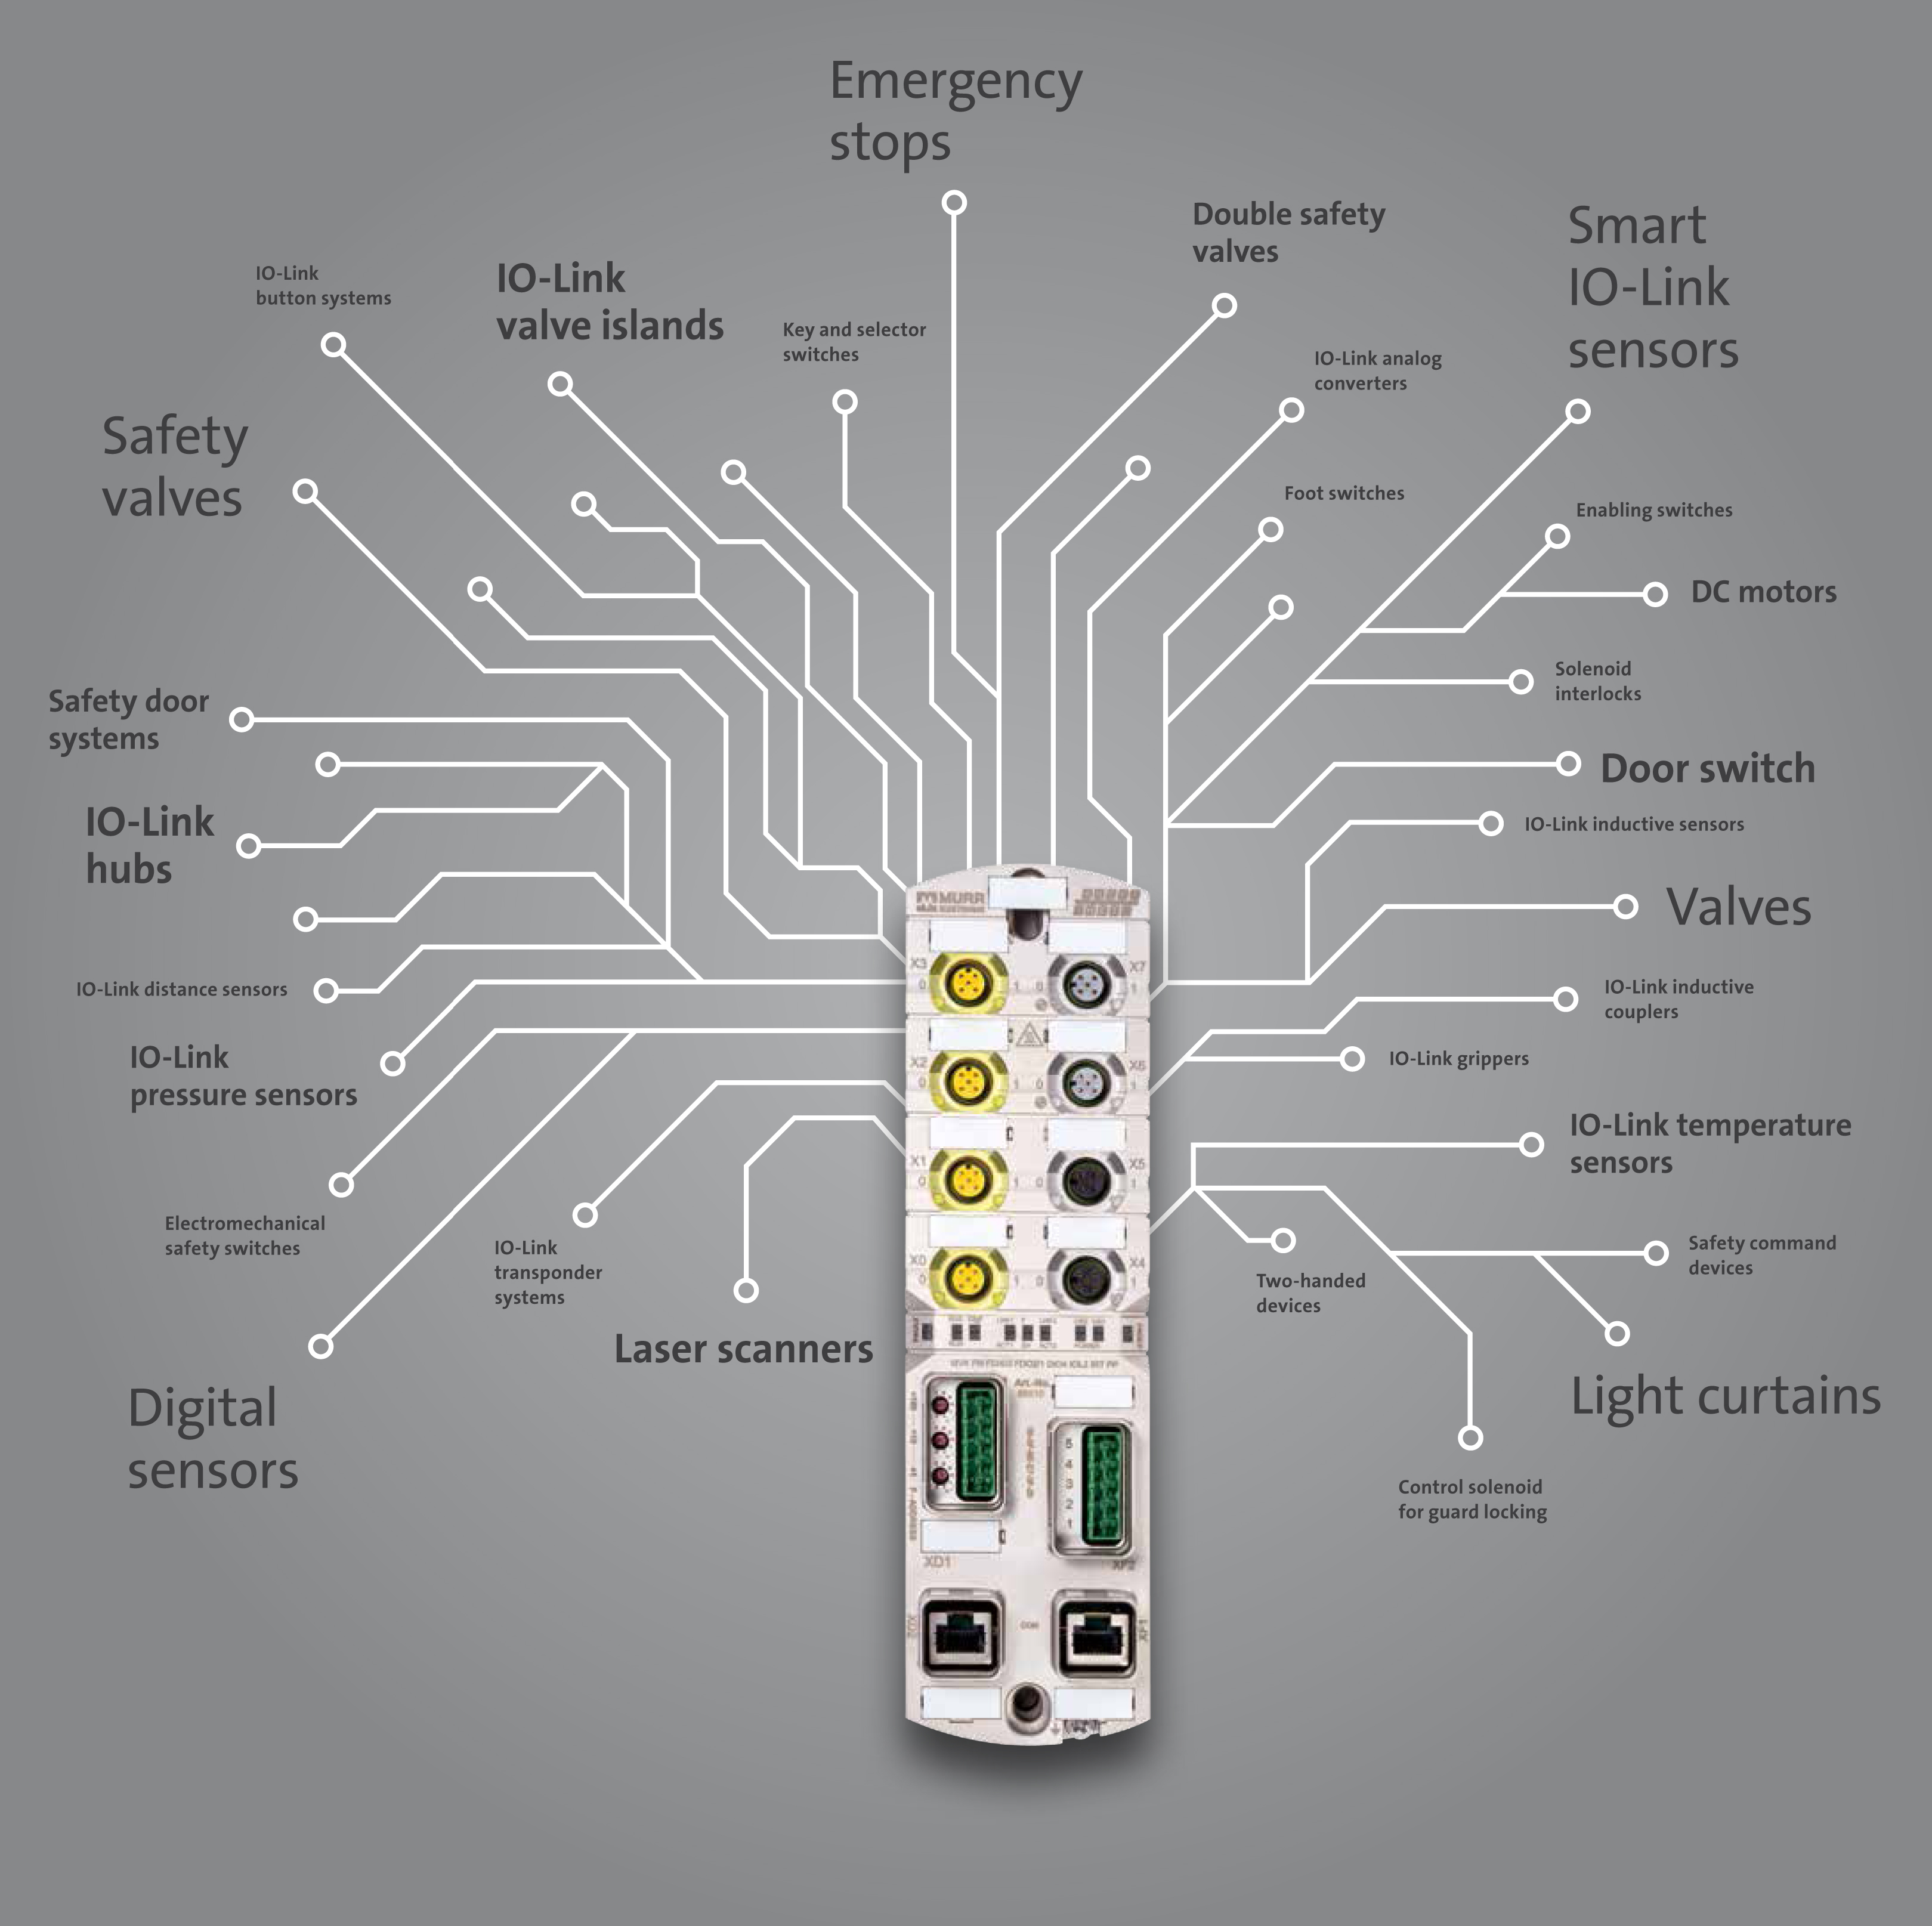 Afbeelding 1. Eén module voor het aansluiten van digitale sensoren, IO-link-sensoren en veiligheidsvoorzieningen. Voor de communicatie met de PLC wordt Profisafe gebruikt.